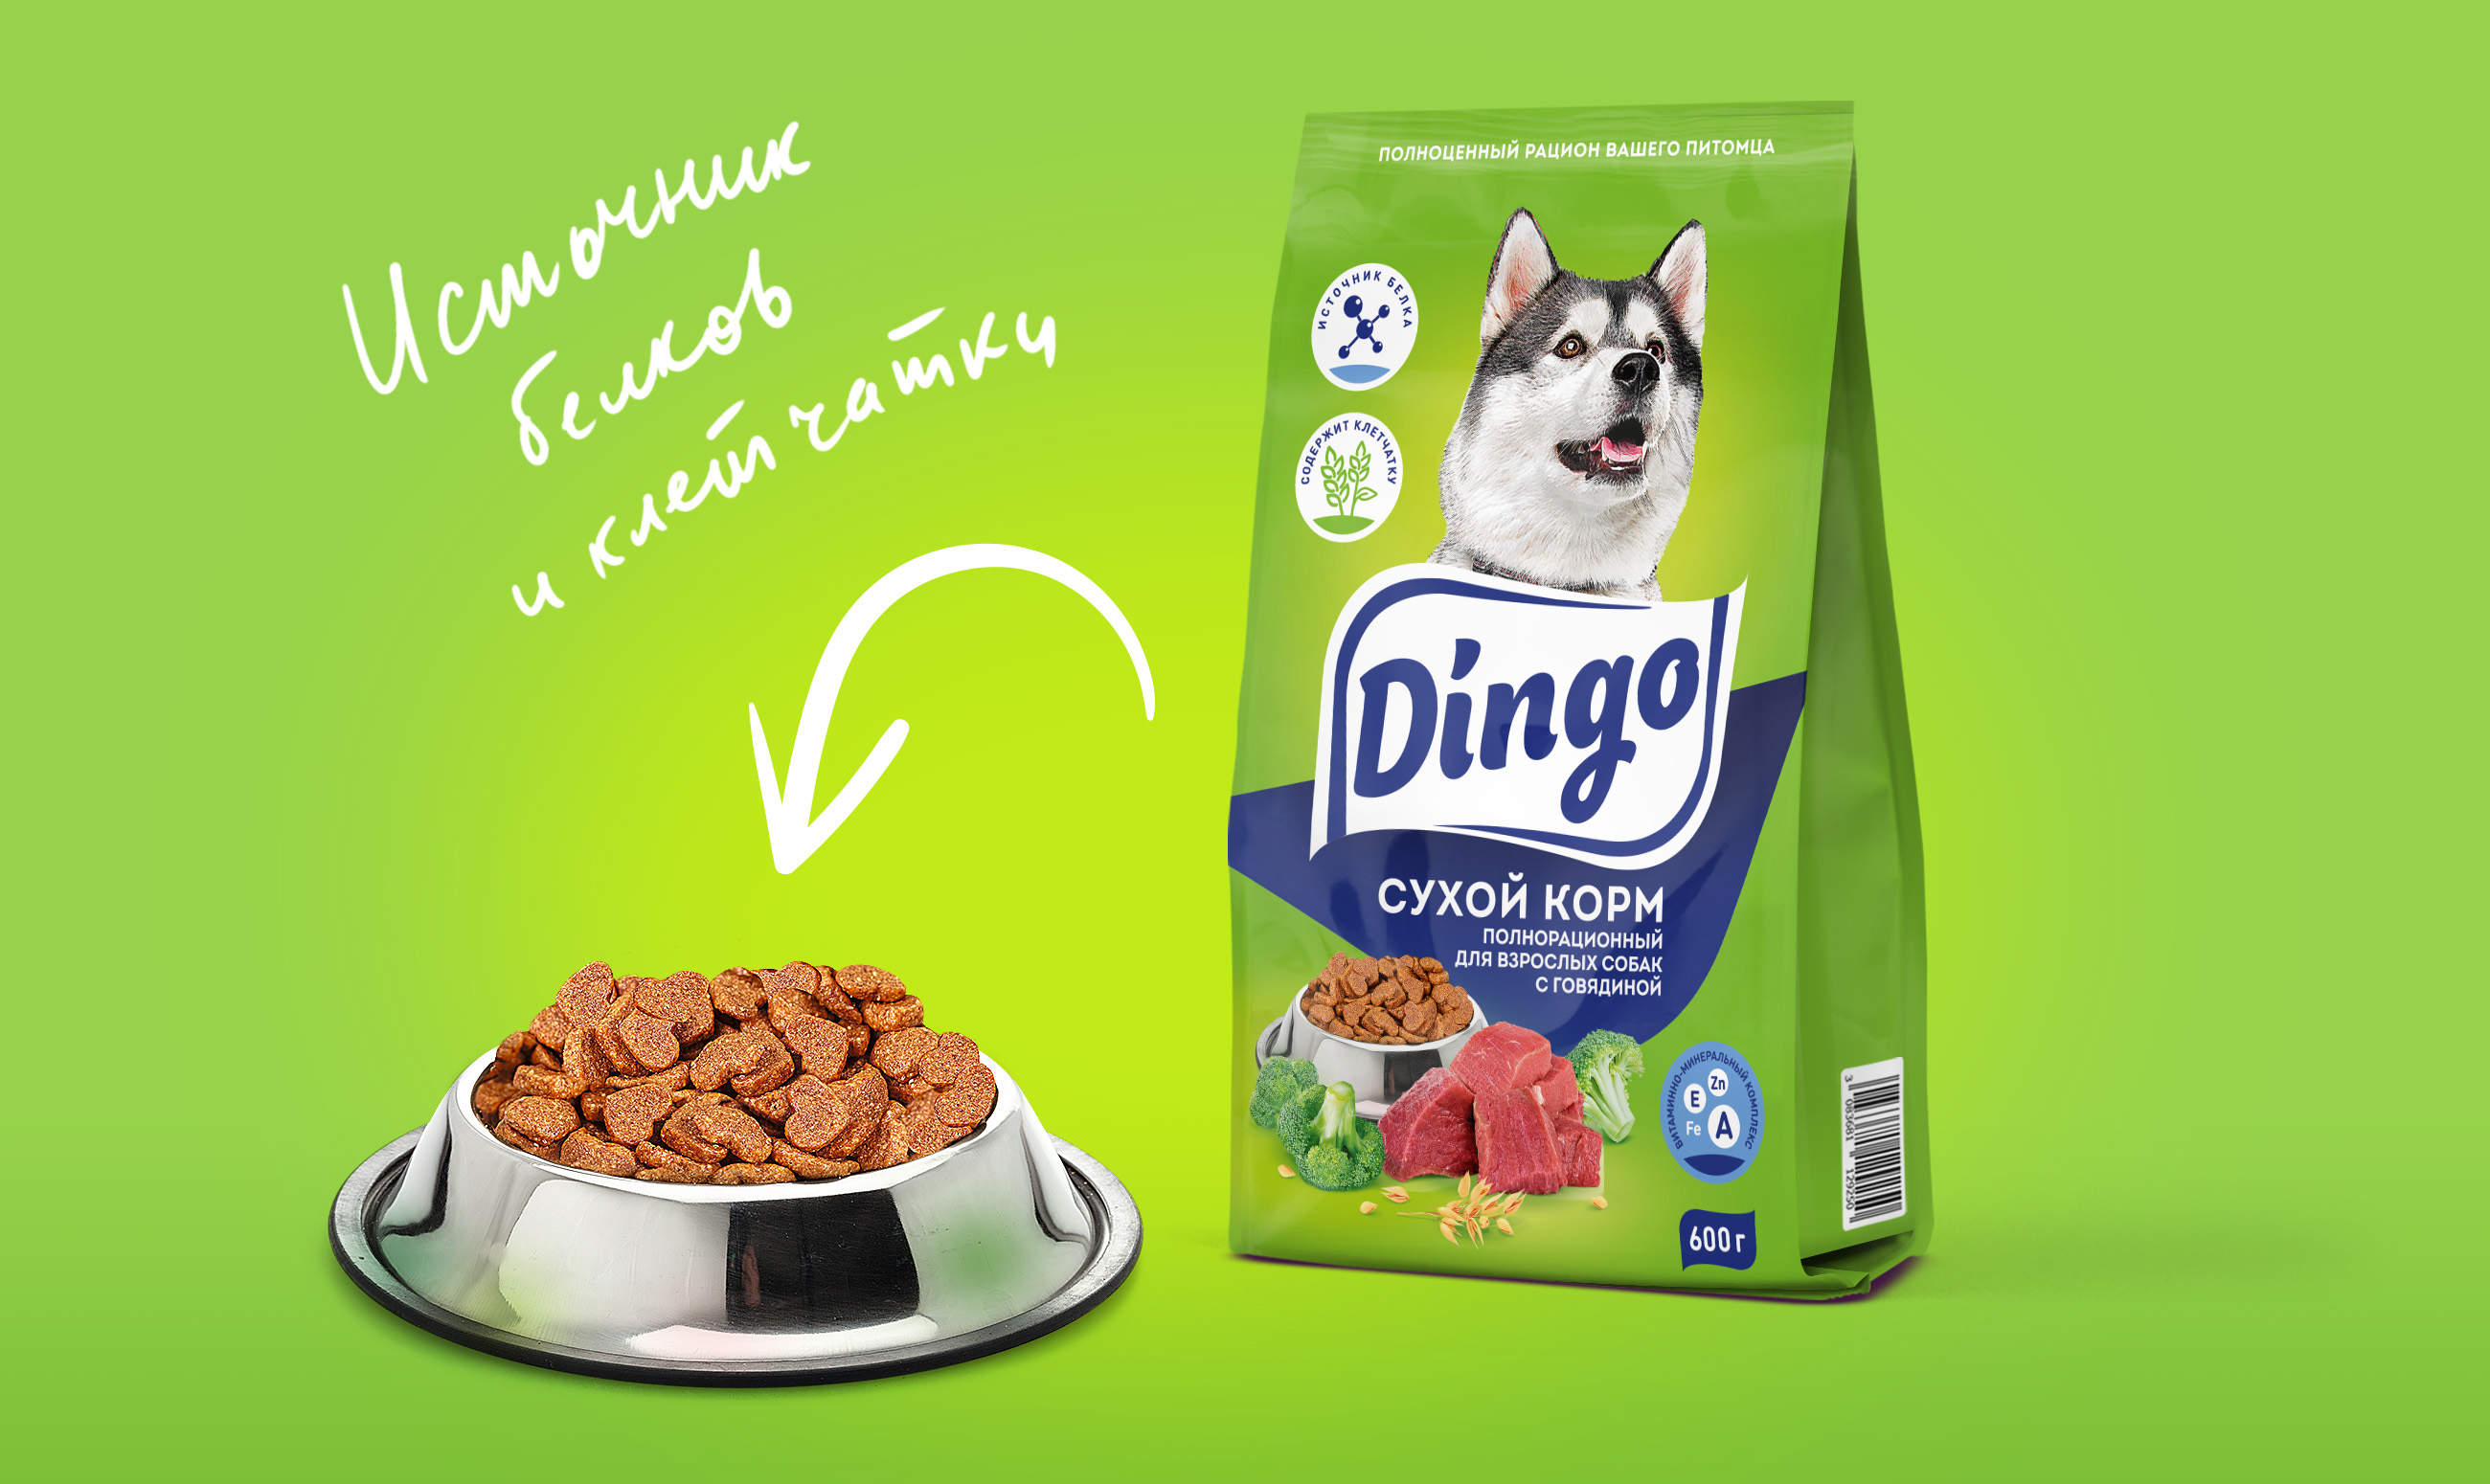 Корм для собак нова. Корм Динго для собак. Сухой корм для собак Dingo. Корм Динго для собак Пятерочка. Состав Динго сухой корм для собак.